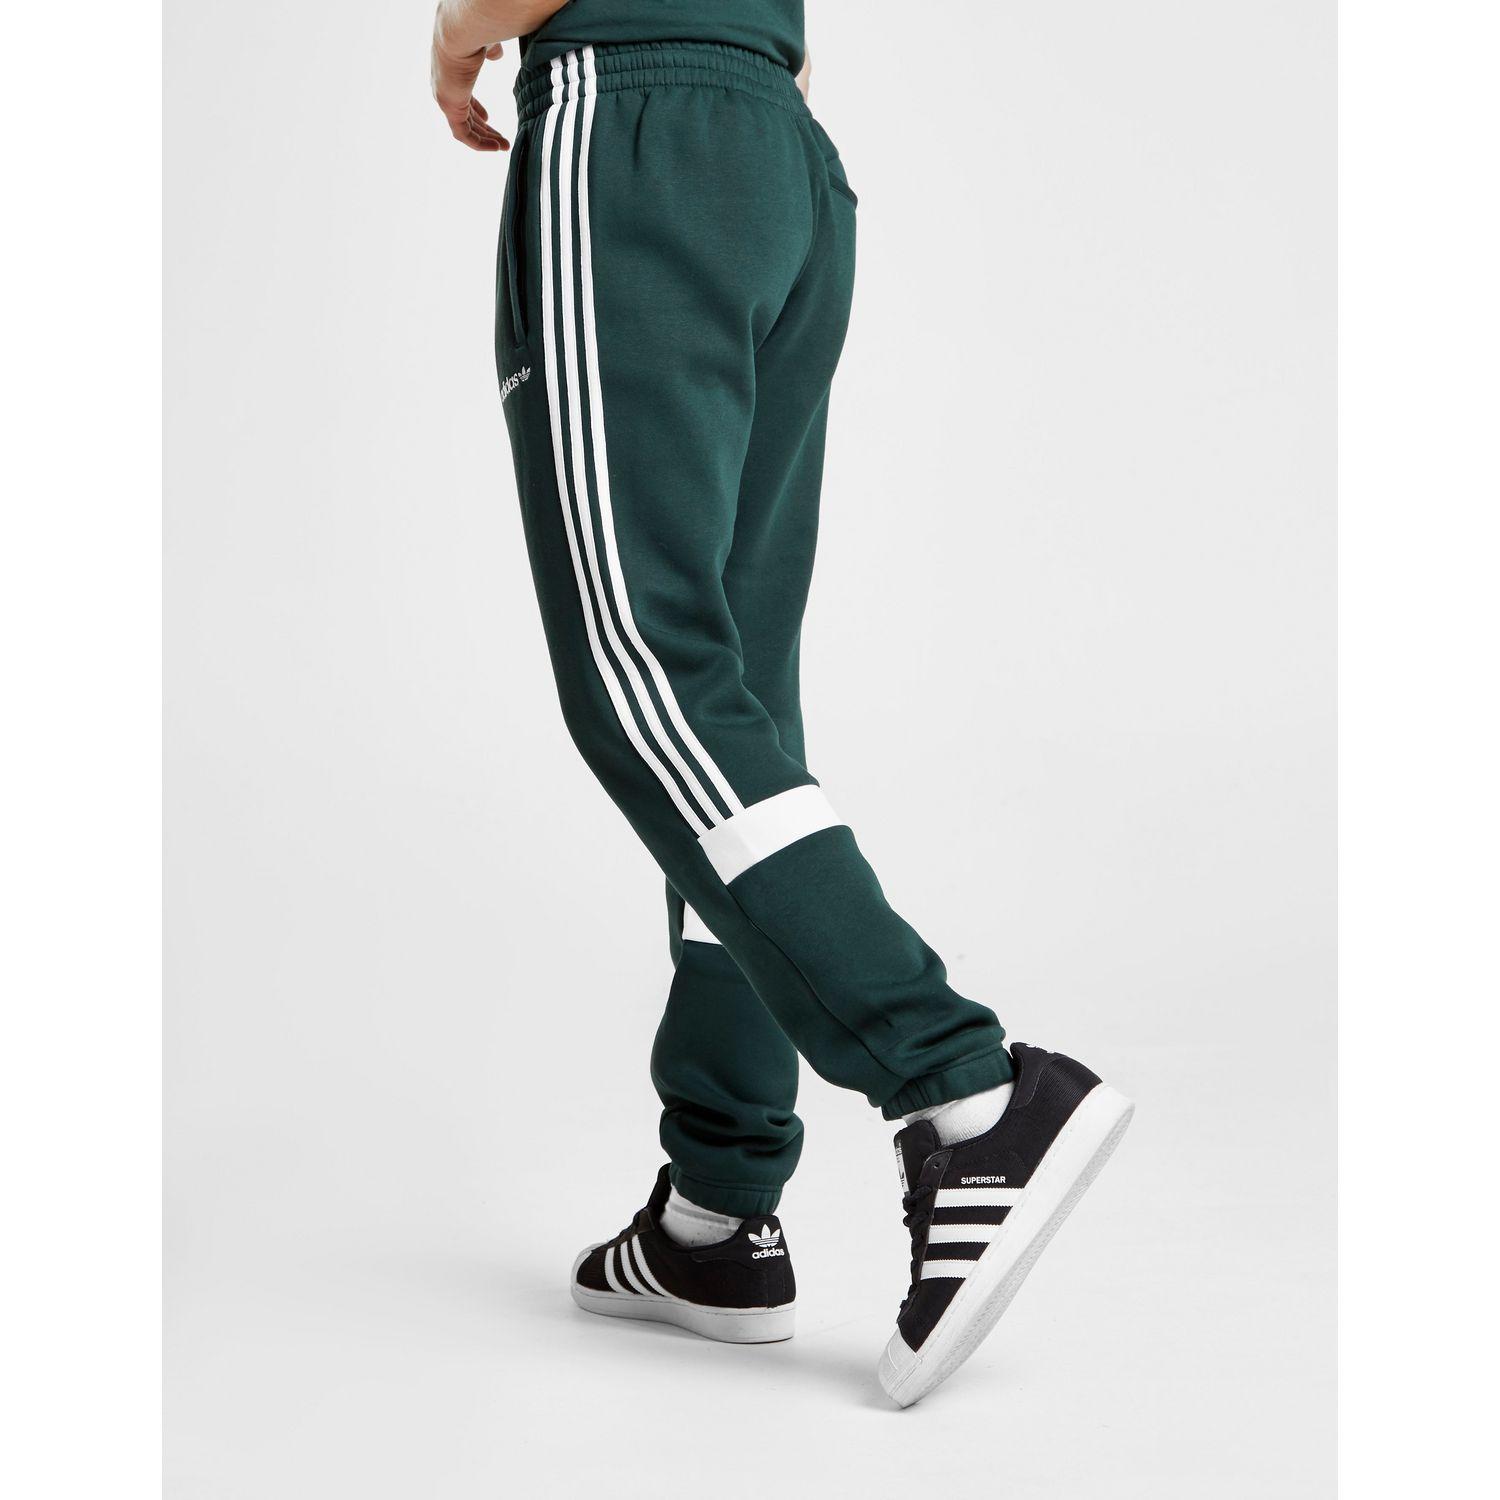 green adidas track pants mens